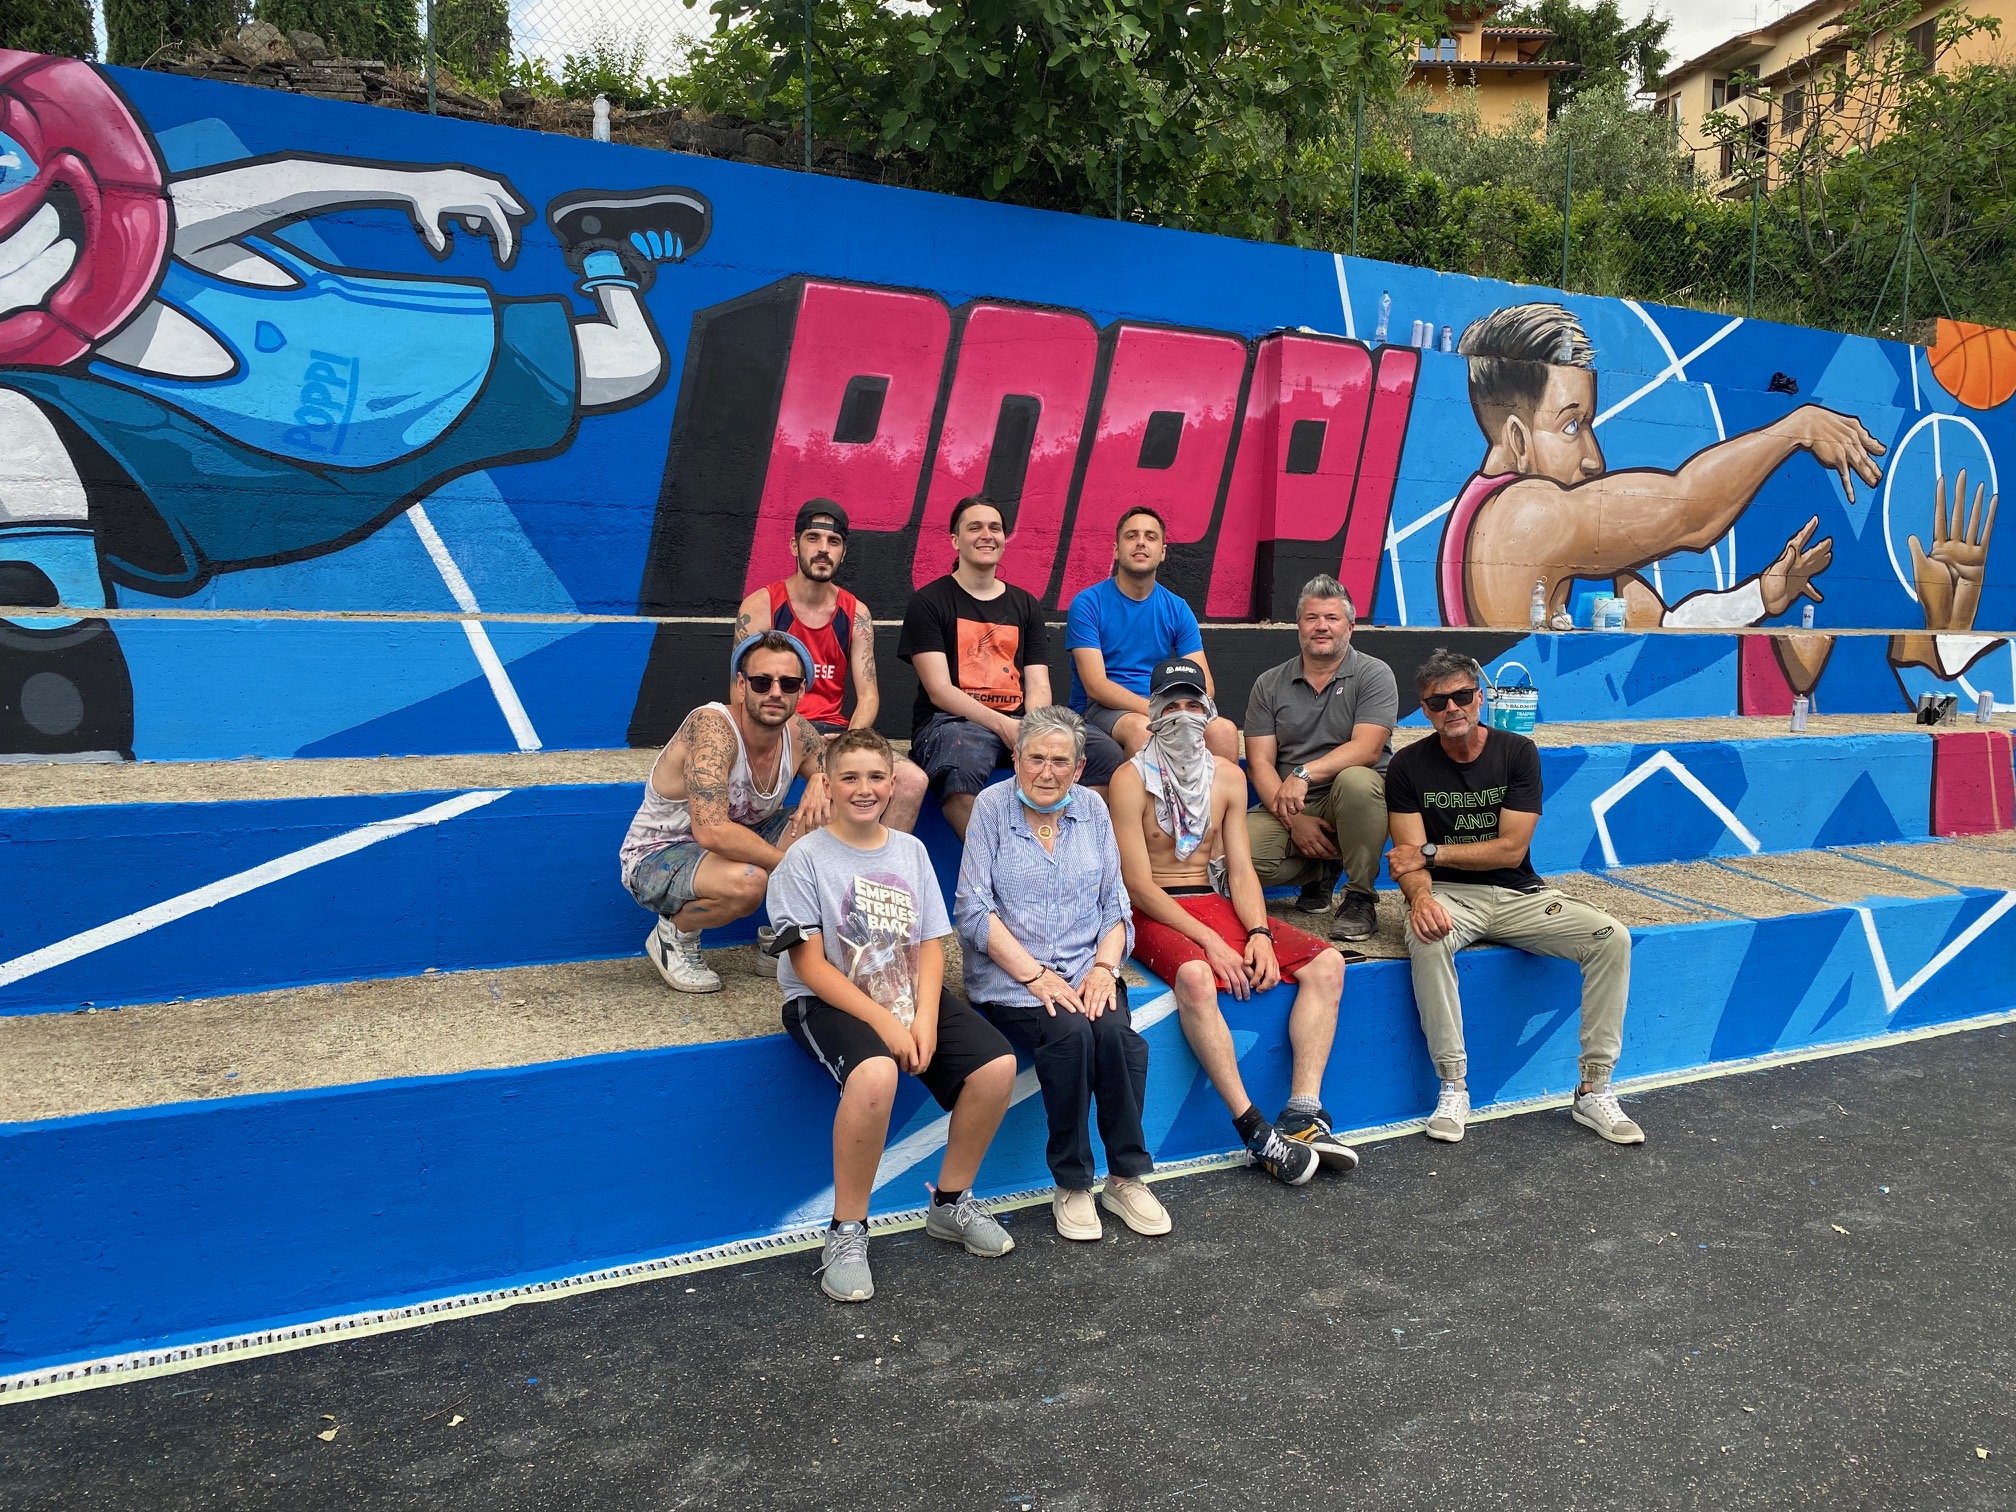 Campo di basket all’aperto di Poppi, i lavori con la street art dei 400 drops crew